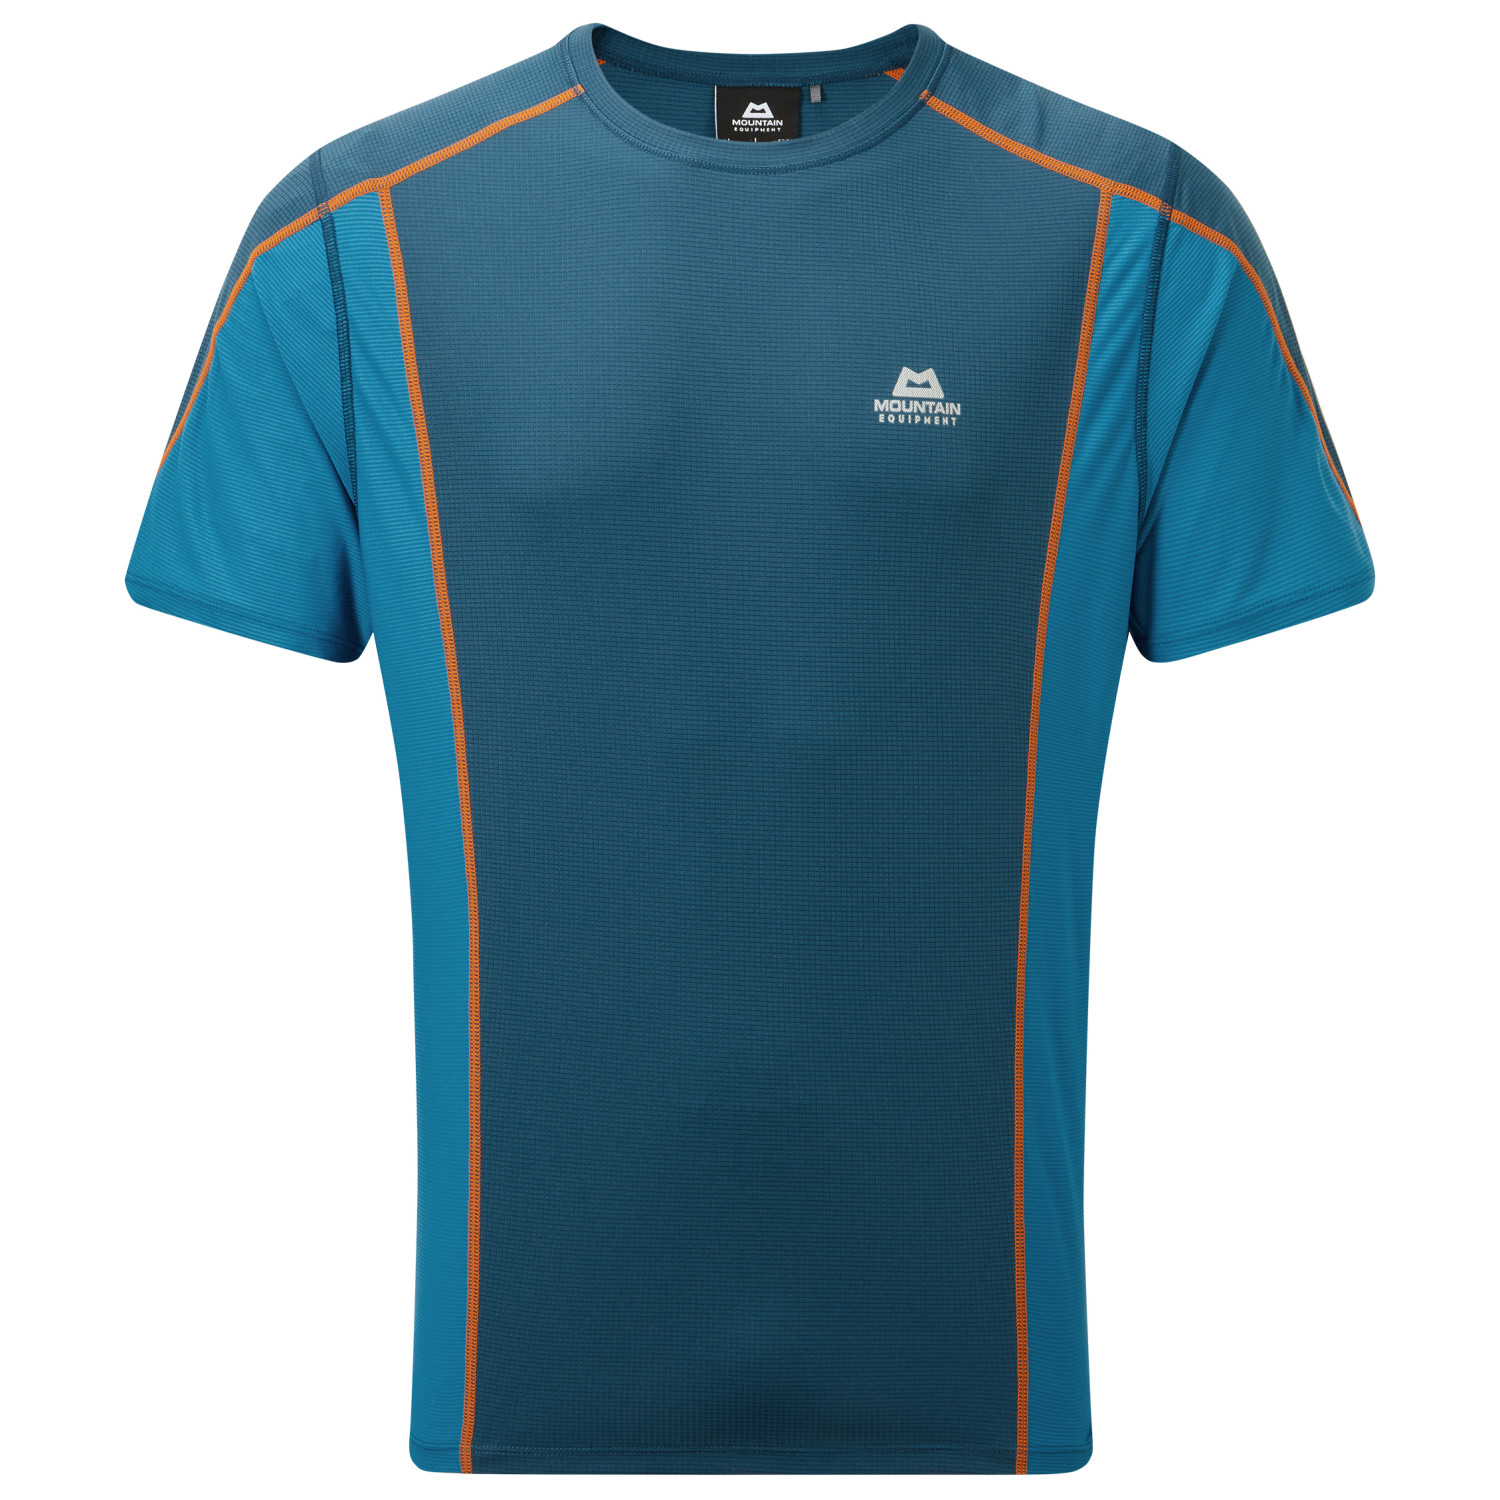 Функциональная рубашка Mountain Equipment Ignis Tee, цвет Majolica/Alto Blue